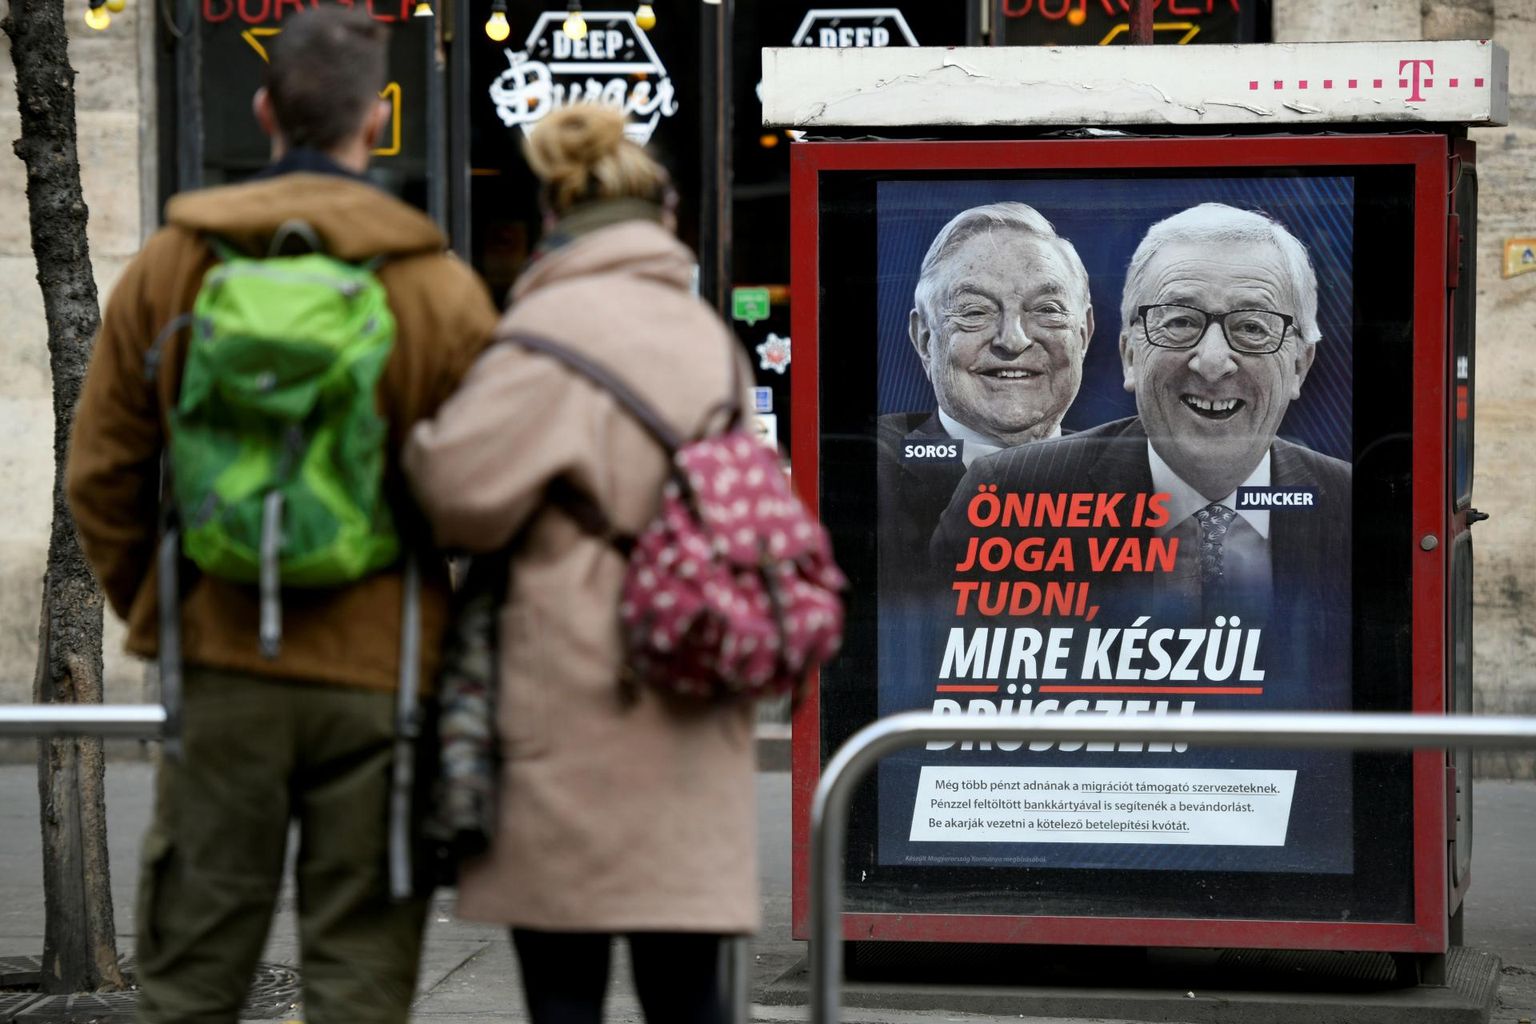 «Ka sinul on õigus teada, mida Brüssel plaanib,» teatasid mullu Ungaris üles riputatud Jean-Claude Junckeri ja George Sorose piltidega plakatid, mis osutusid paljudele Fidesziga koos Euroopa paremtsentris olevatele poliitikutele ja parteidele viimaseks piisaks. 